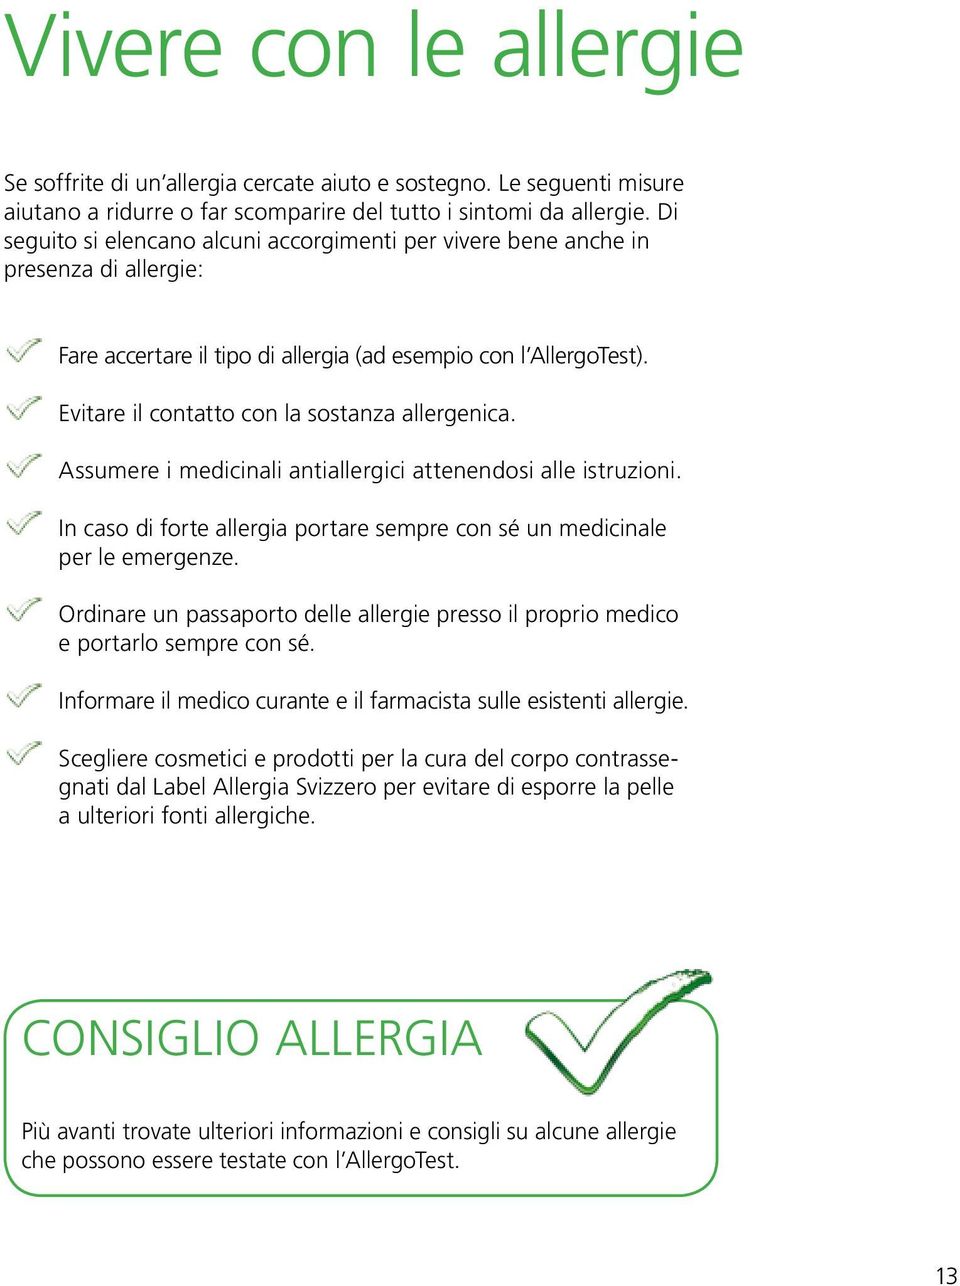 Evitare il contatto con la sostanza allergenica. Assumere i medicinali antiallergici attenendosi alle istruzioni. In caso di forte allergia portare sempre con sé un medicinale per le emergenze.